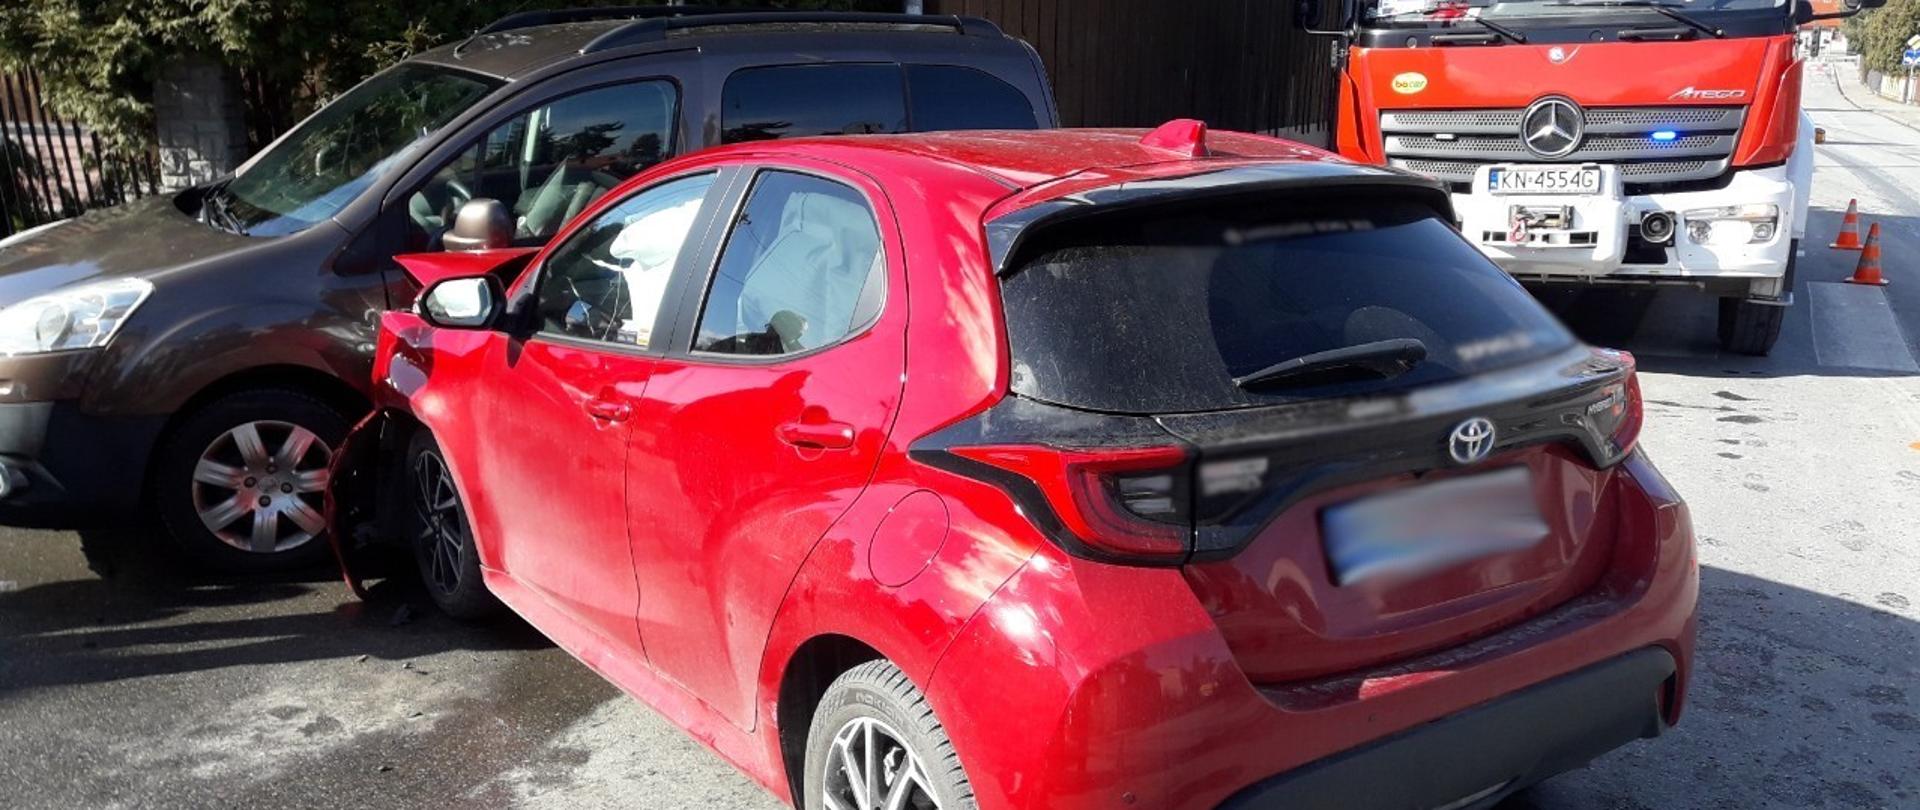 Czerwony samochód osobowy uderzył w bok samochodu ciemnego koloru.